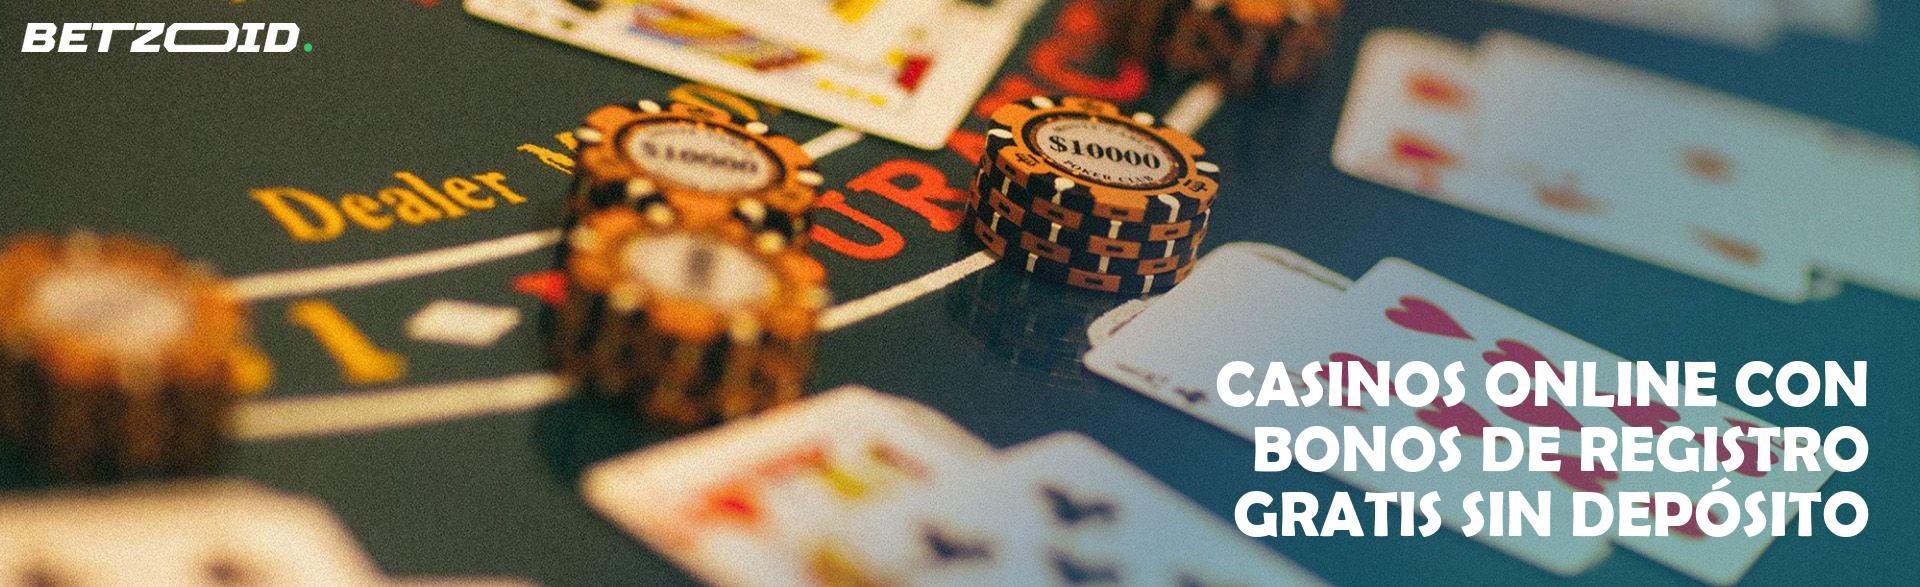 Casinos Online con Bonos de Registro Gratis sin Depósito.